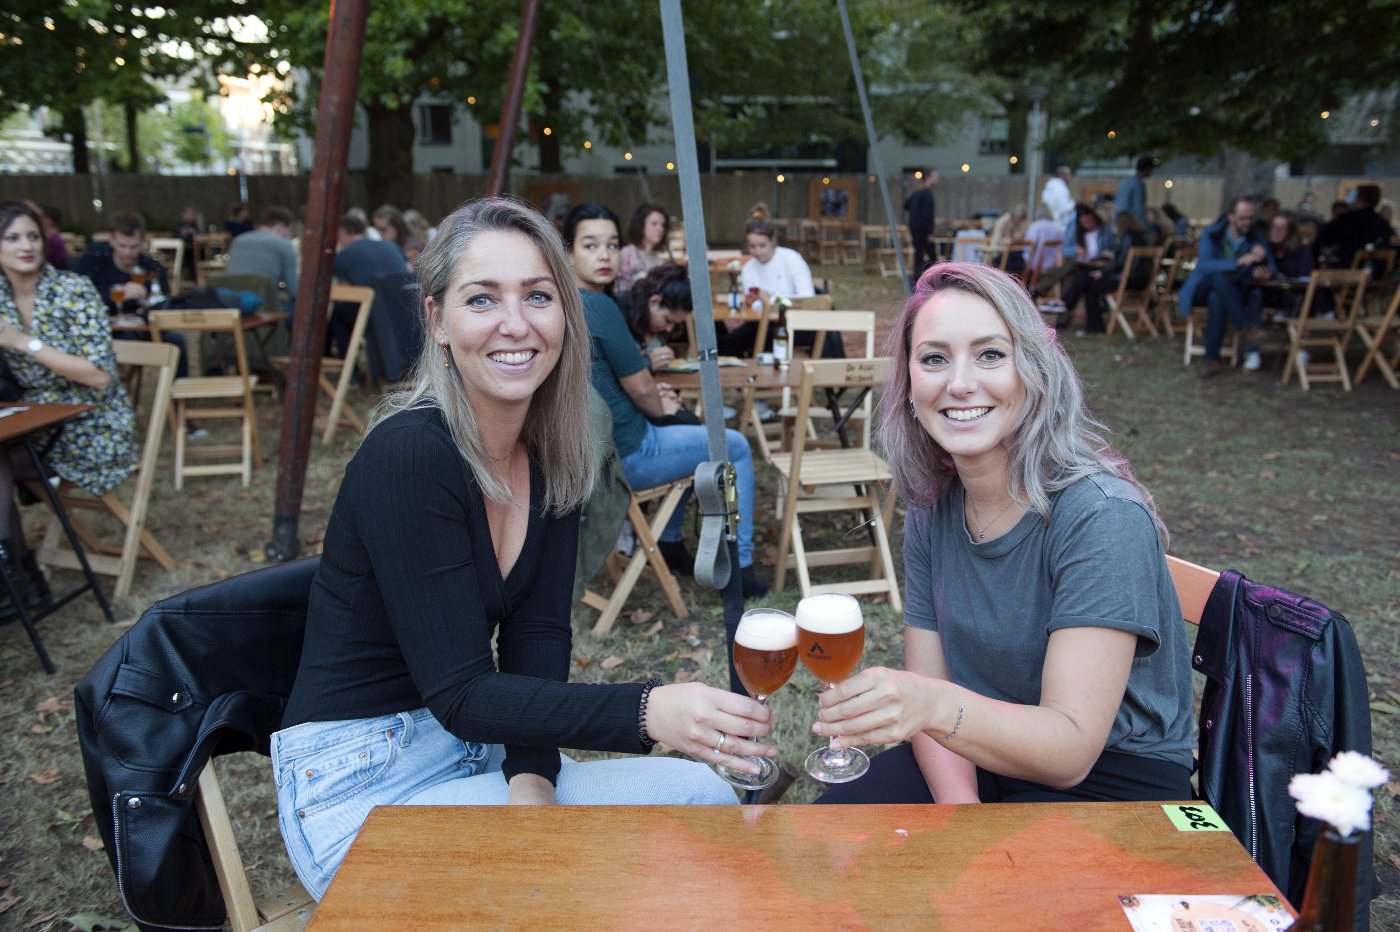 Mout Bierfestival Nijmegen